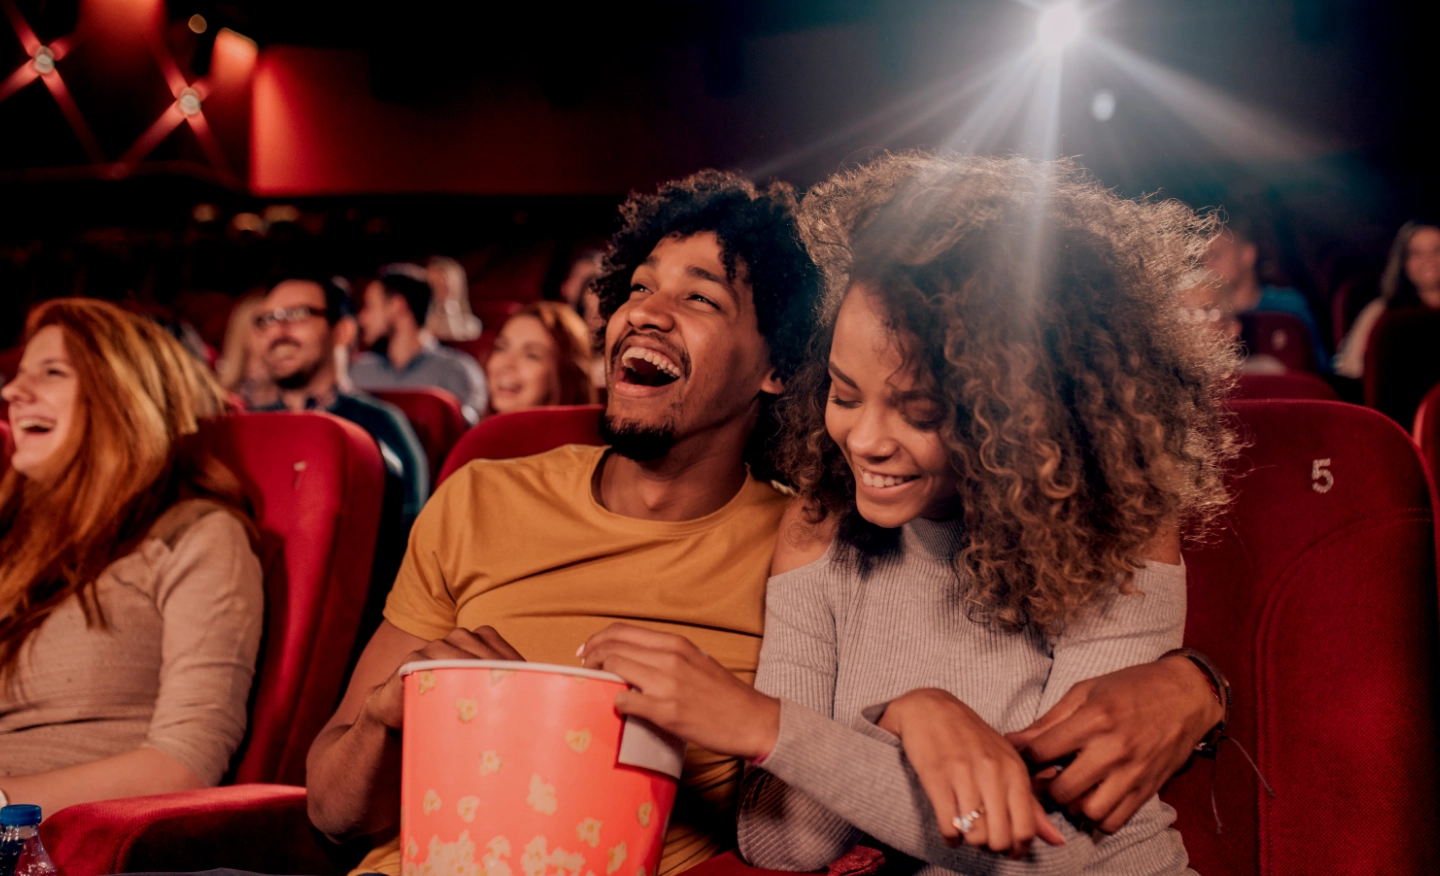 #BradescoAcessível #Pratodomundover Vemos um casal sorrindo enquanto assiste um filme no cinema. Vemos também grafismos vermelhos em volta da imagem.